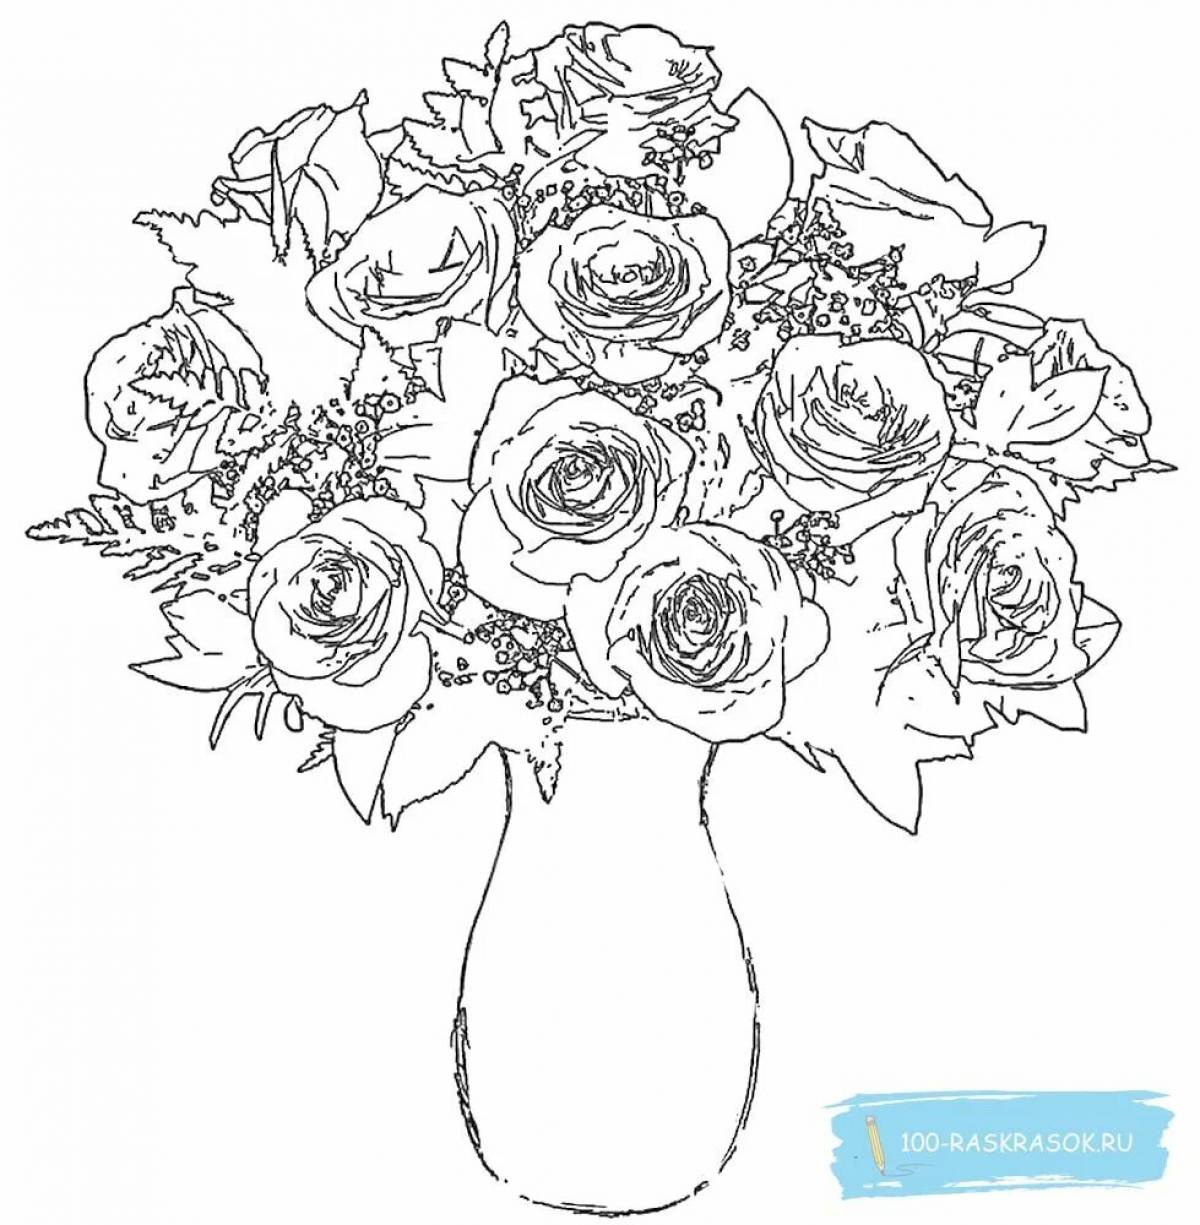 Rose flowers in vase #8